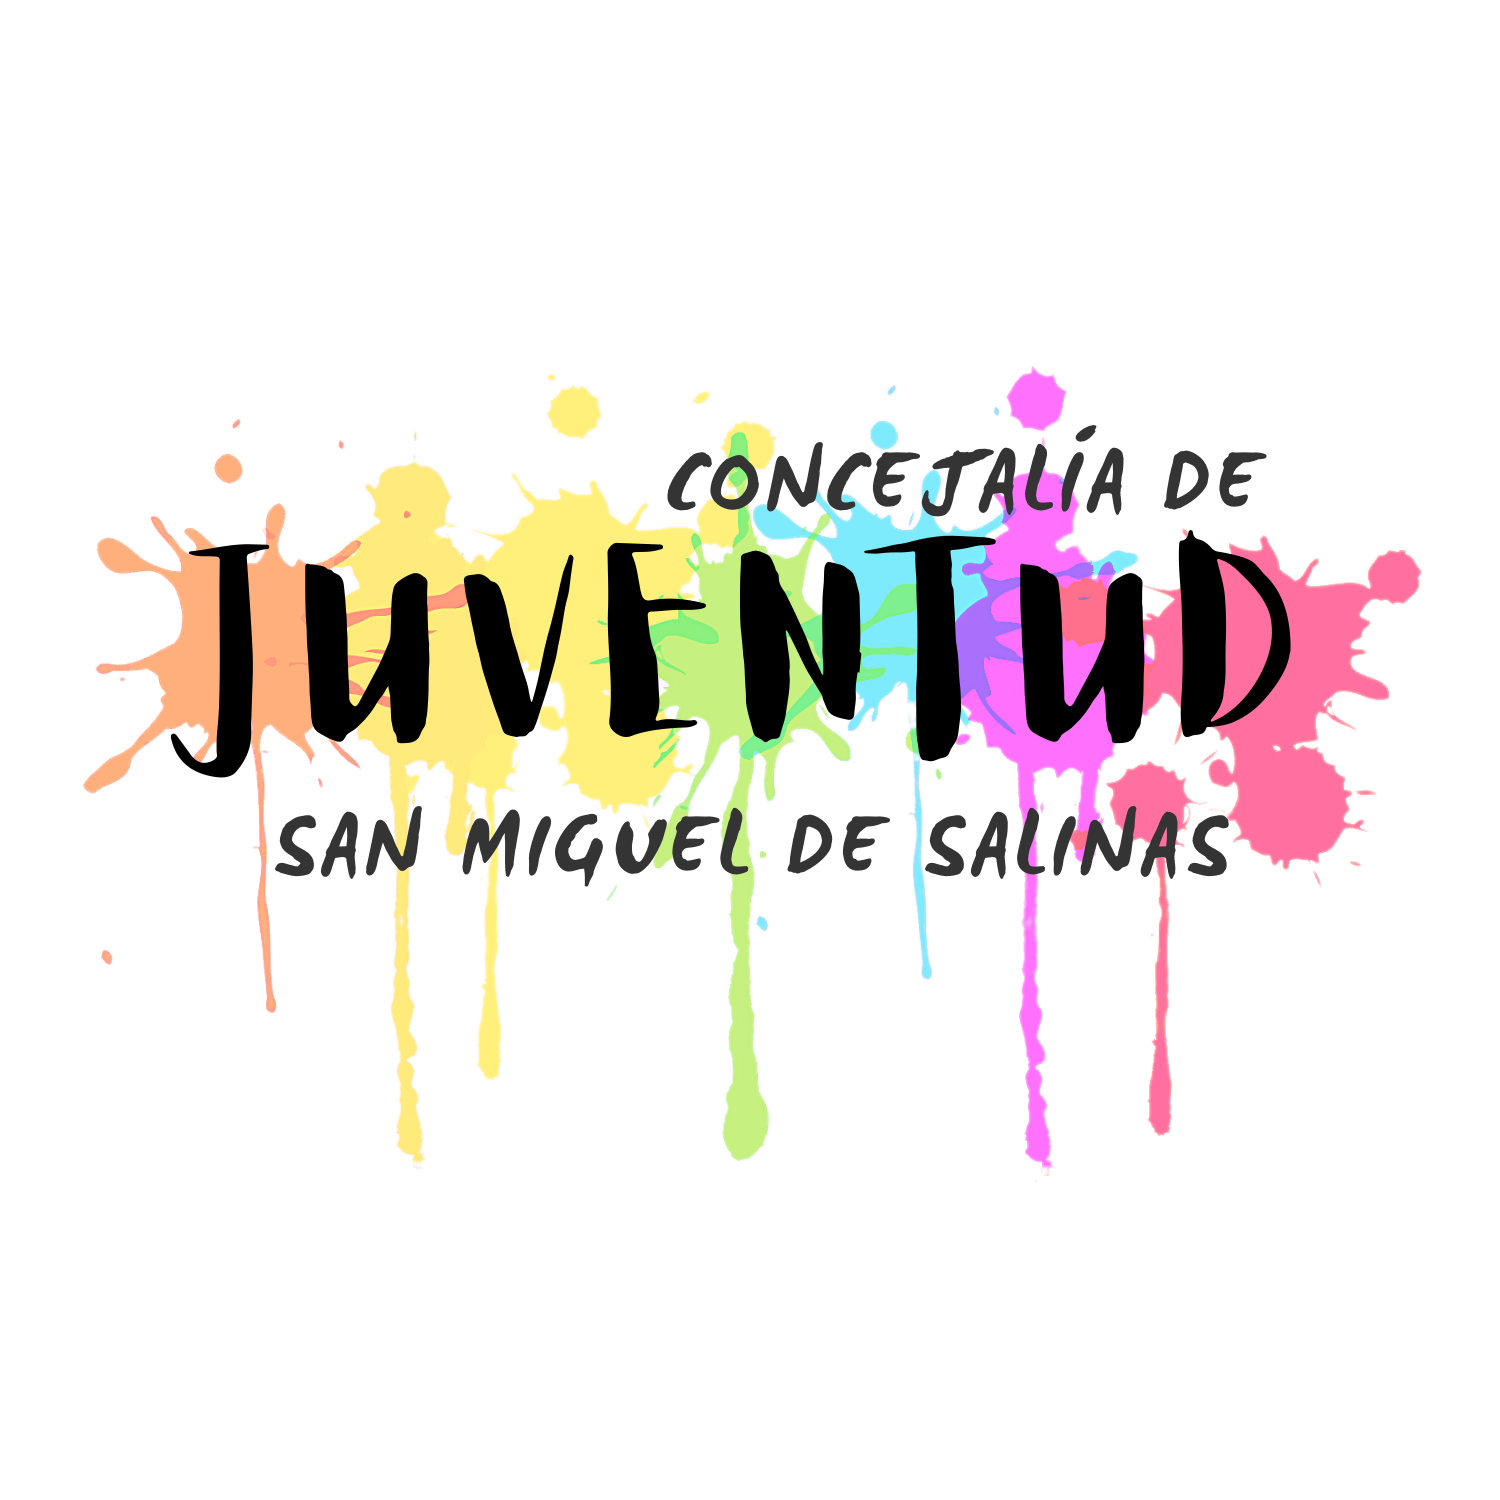 La Concejalía de Juventud estrena logo. San Miguel de Salinas